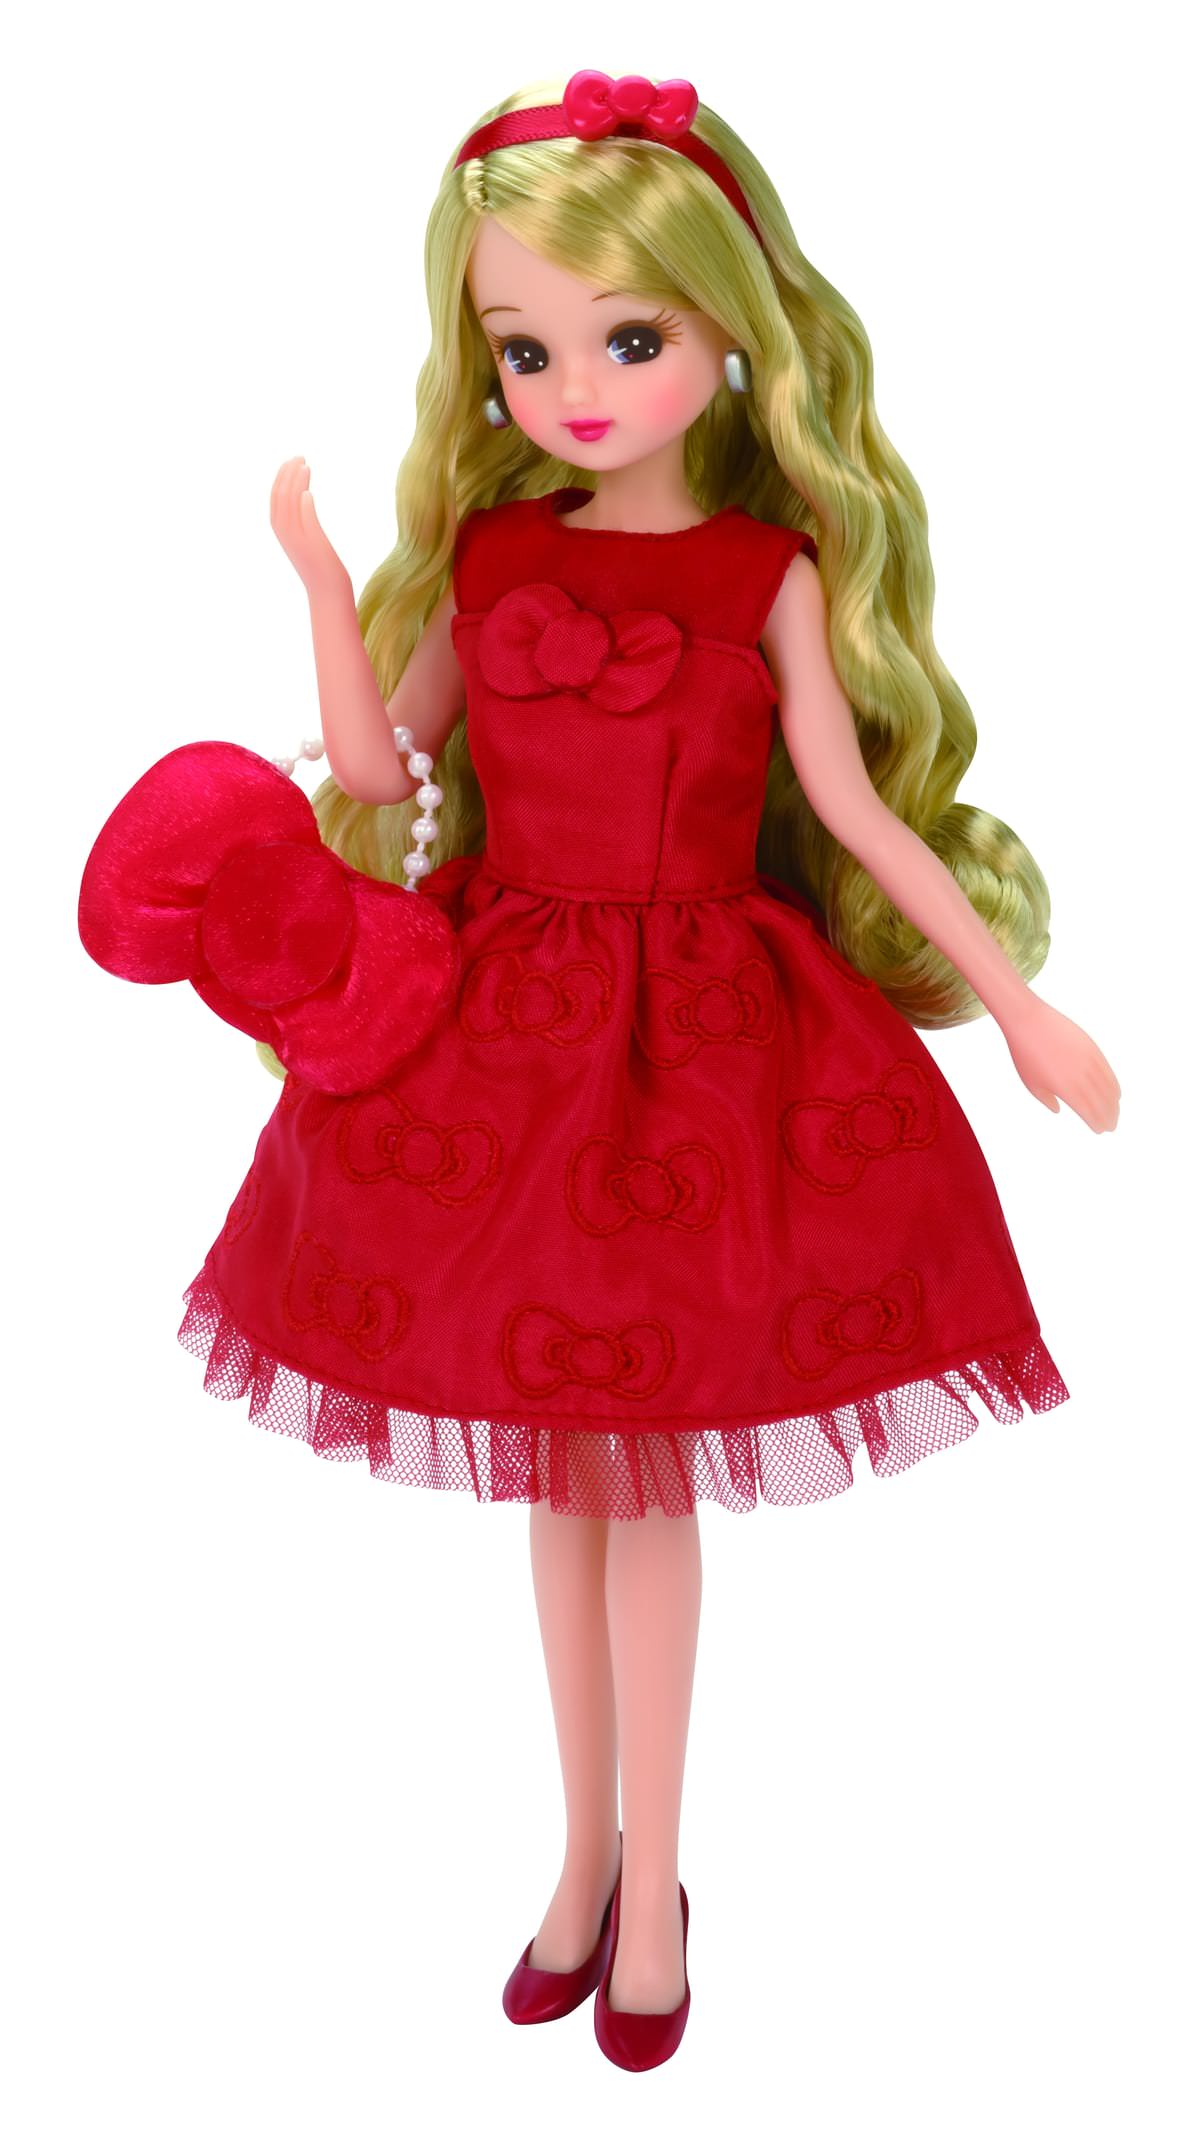 「LiccA Stylish Doll Collection ハローキティ セレブレーション スタイル」